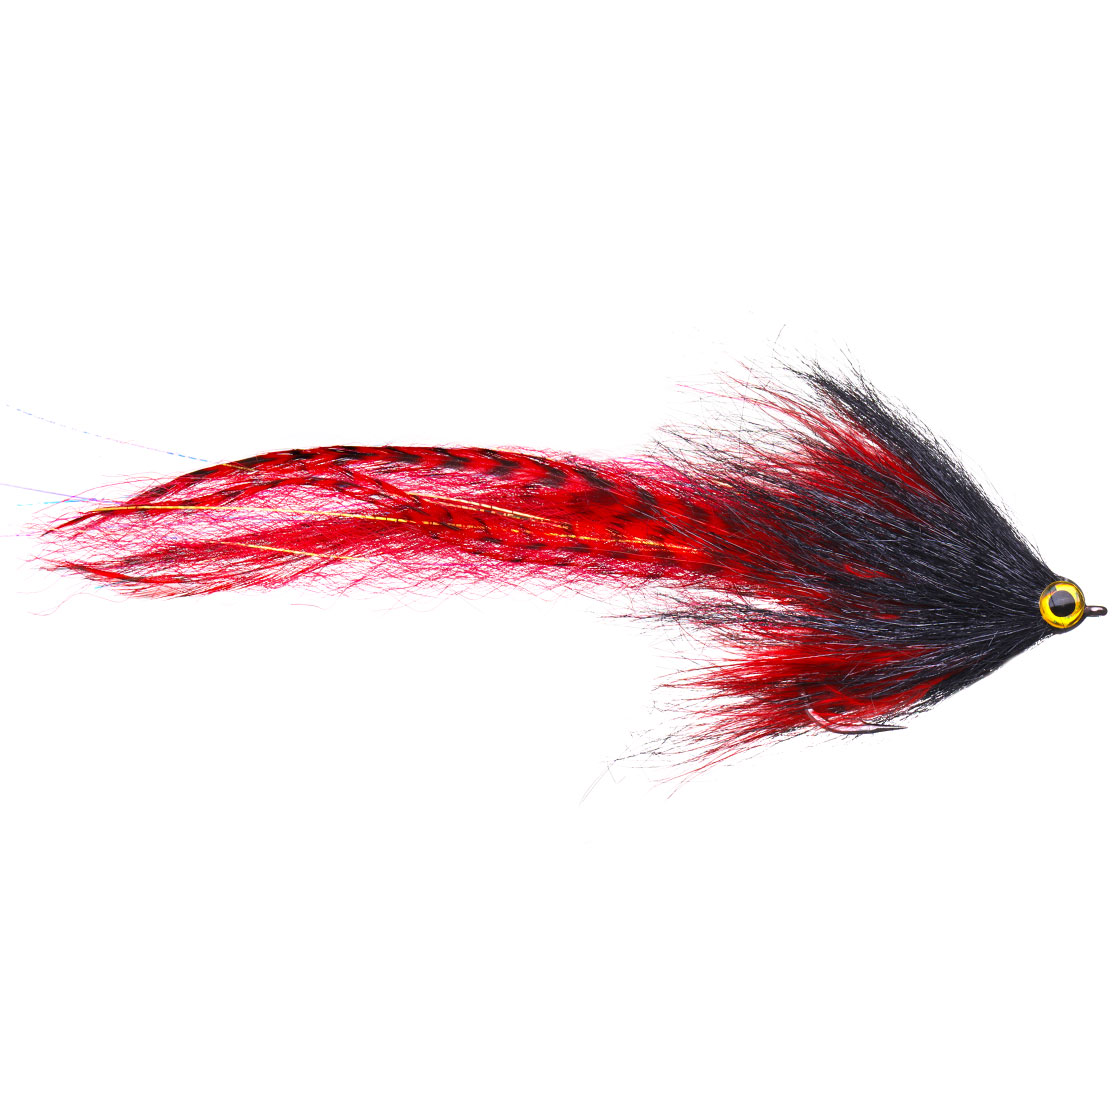 Superflies Pike Fly - Predator Brush red black, Flies with Hooks, Pike  Flies, Flies